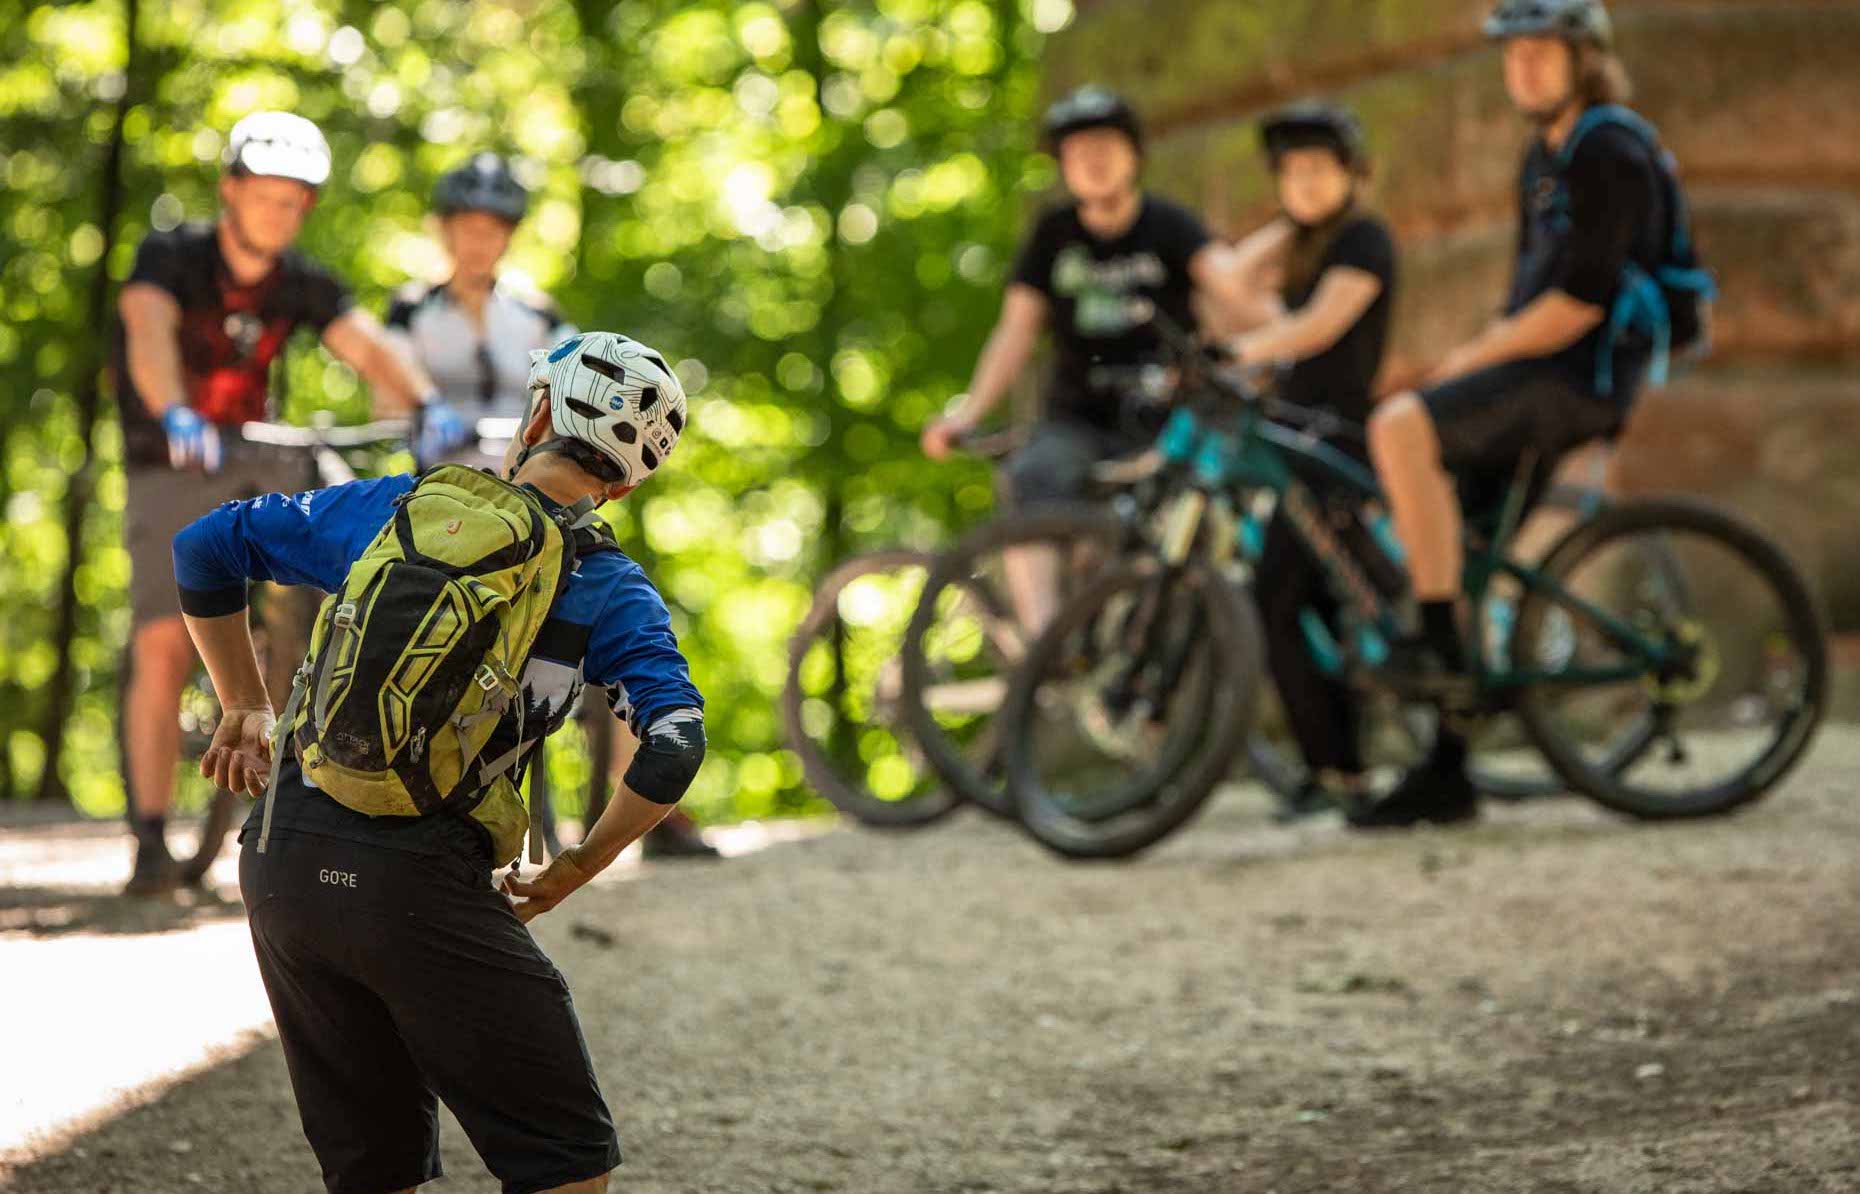 MTB Fahrtechnik Kurs für Einsteiger in Gera - Mountainbike Basic - Rock my Trail Bikeschule